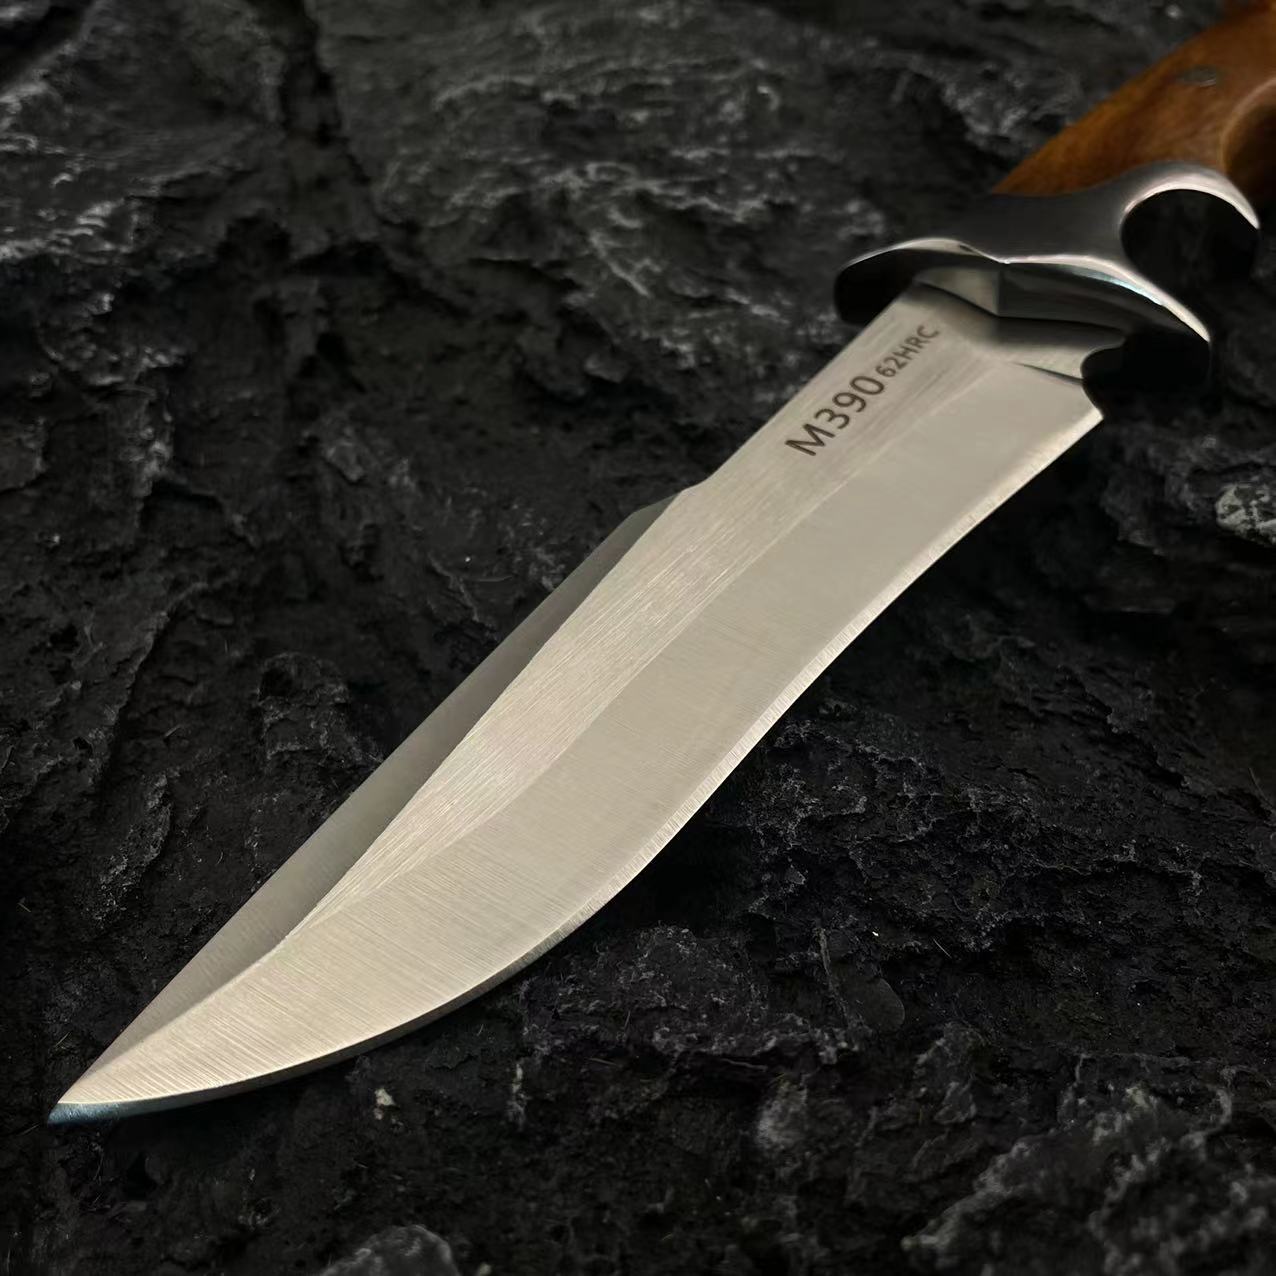 Yüksek kaliteli düz bıçak sabit bıçak bıçağı d2 çelik saten bıçak ahşap+çelik saplı açık hava hayatta kalma düz av bıçağı derisi kılıf